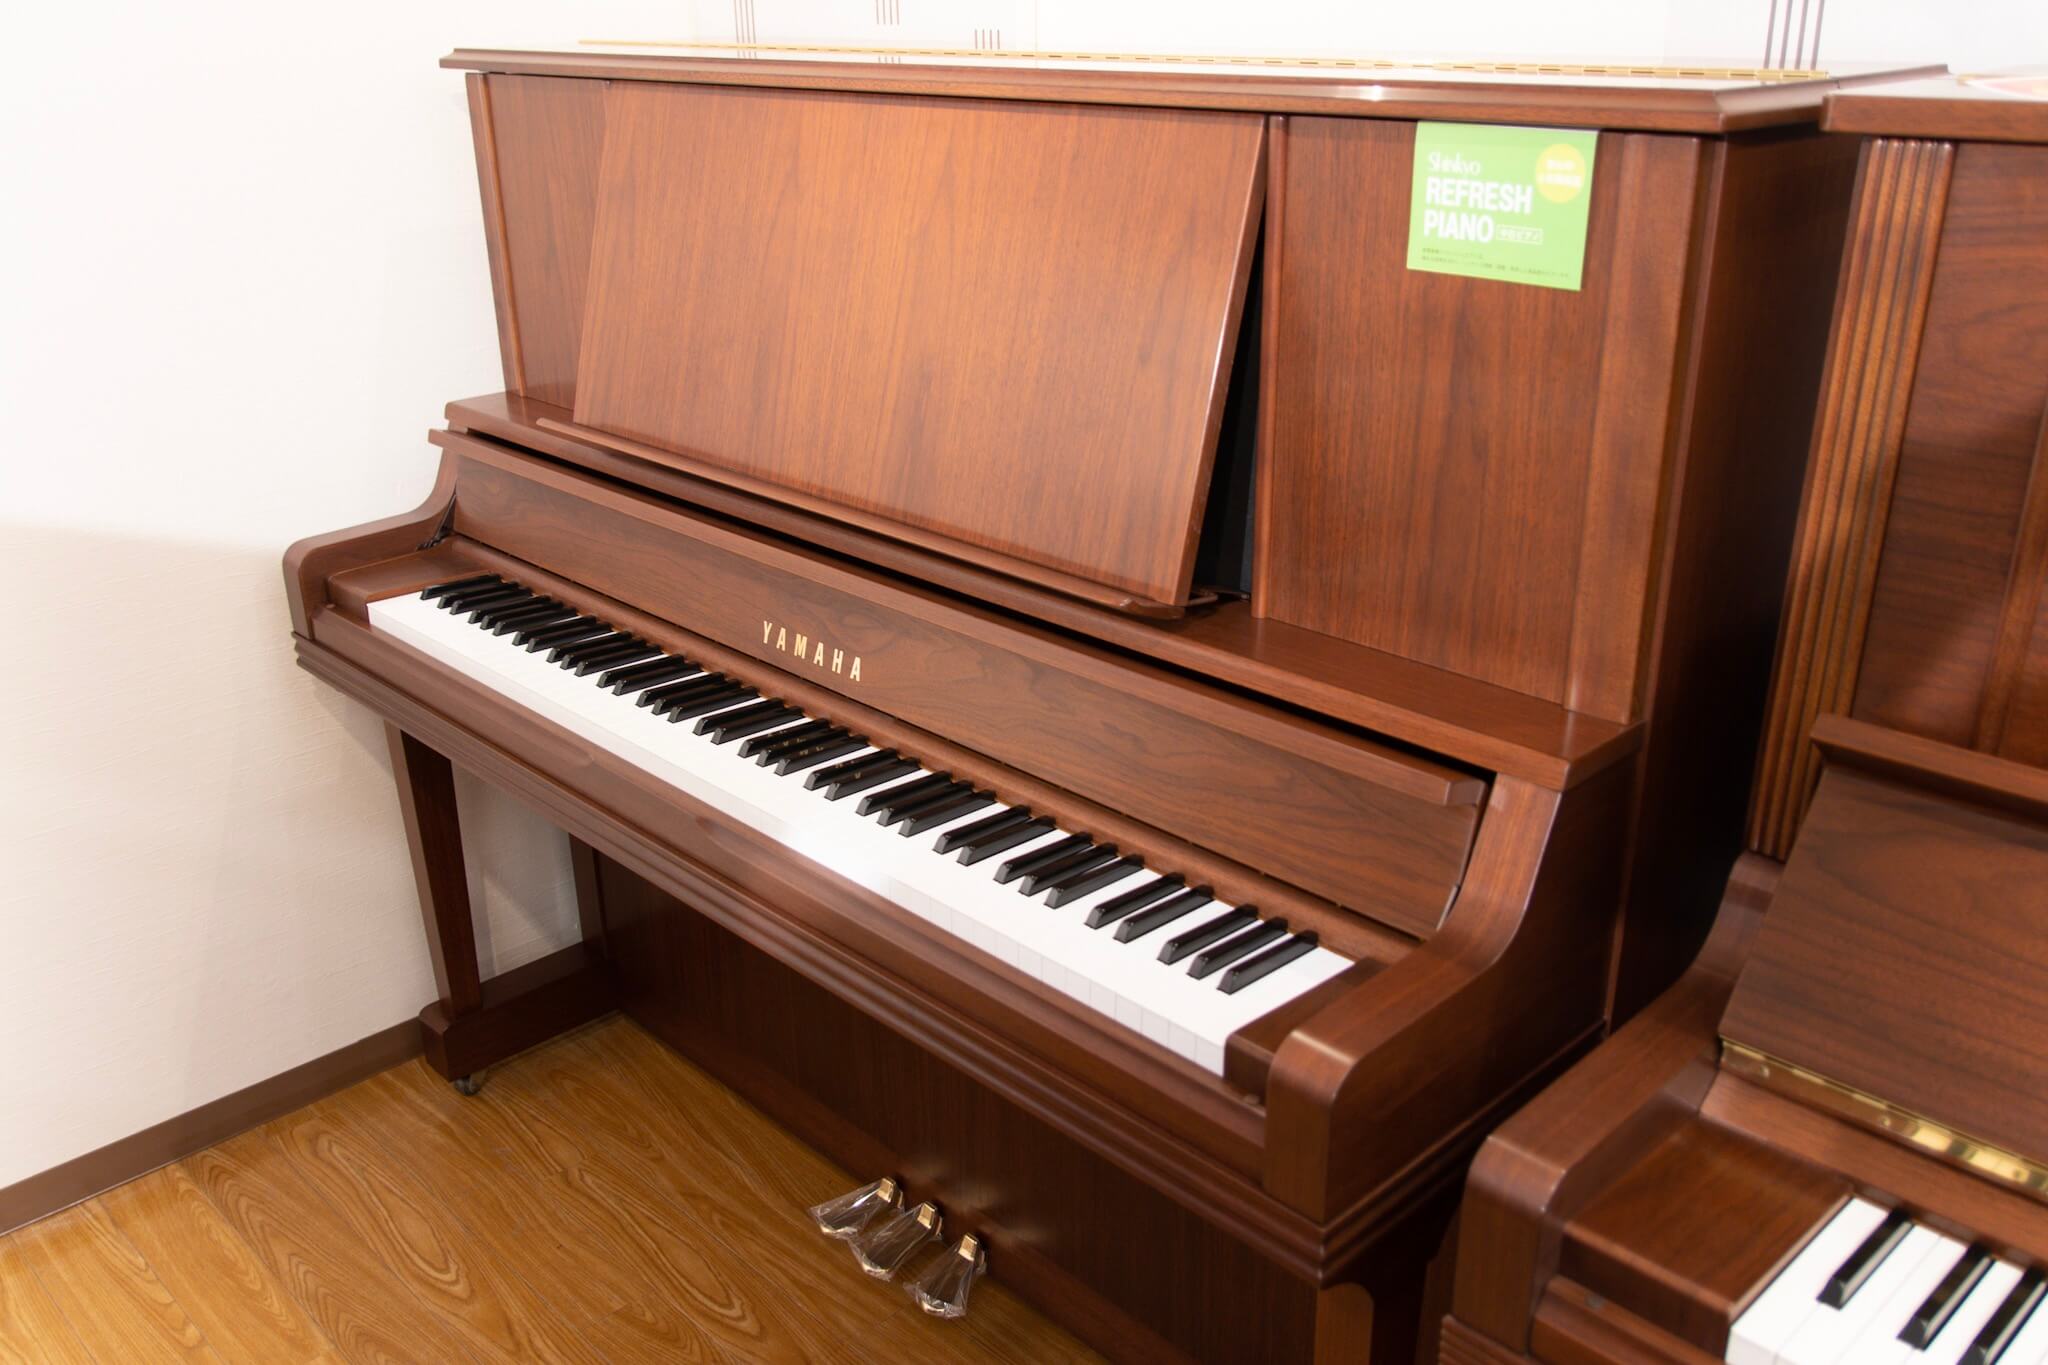 ヤマハ YU5Wn| 中古ピアノ 自社工房リフレッシュ済3年保証付 | 新響